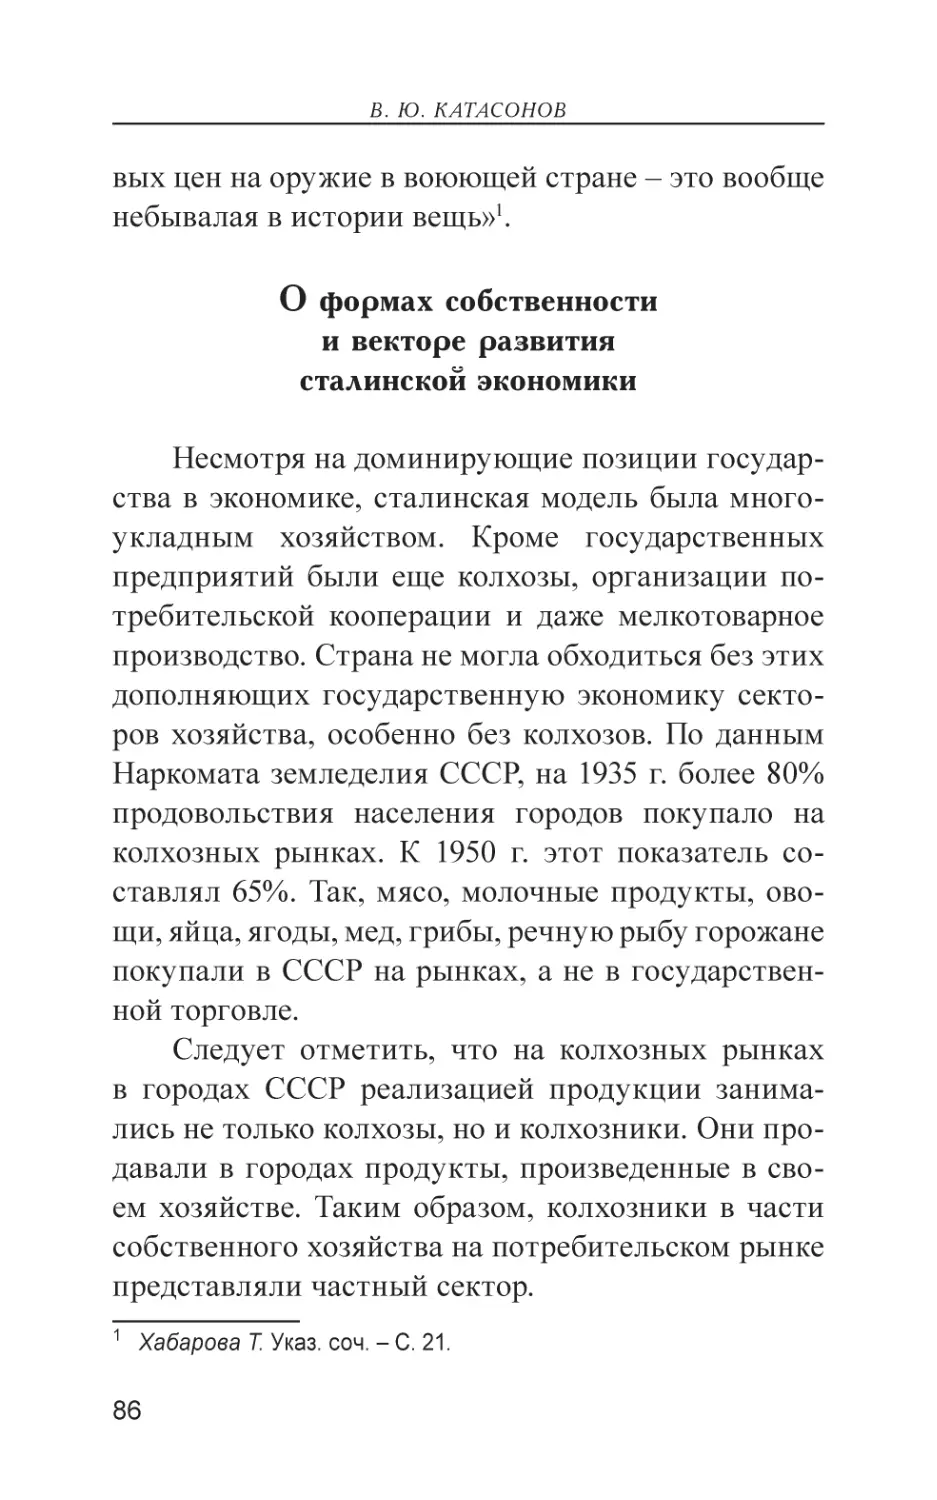 О формах собственности и векторе развития сталинской экономики